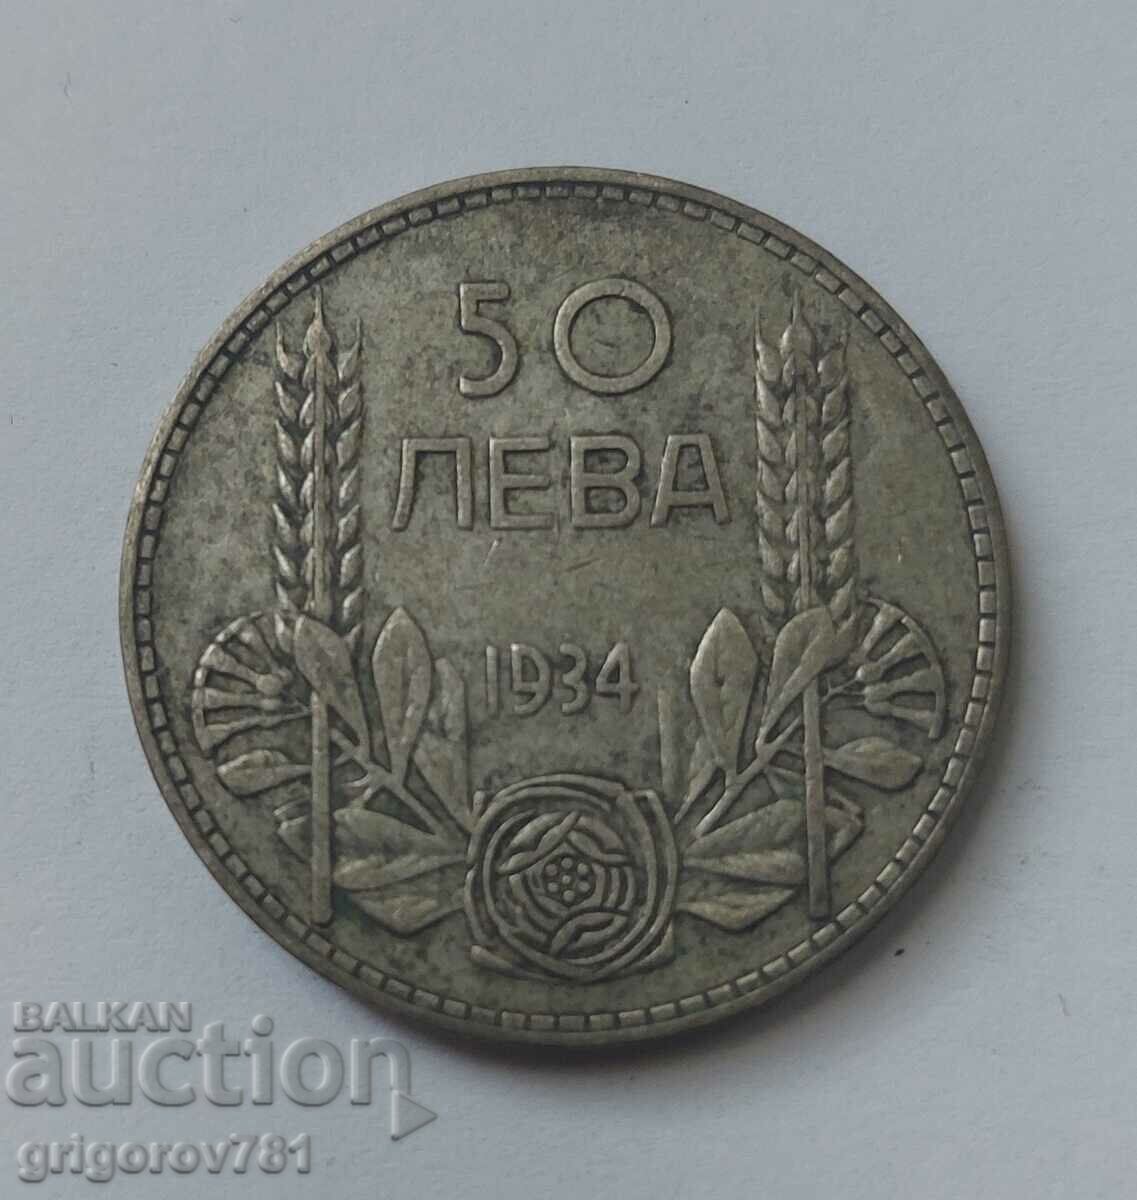 Ασήμι 50 λέβα Βουλγαρία 1934 - ασημένιο νόμισμα #28